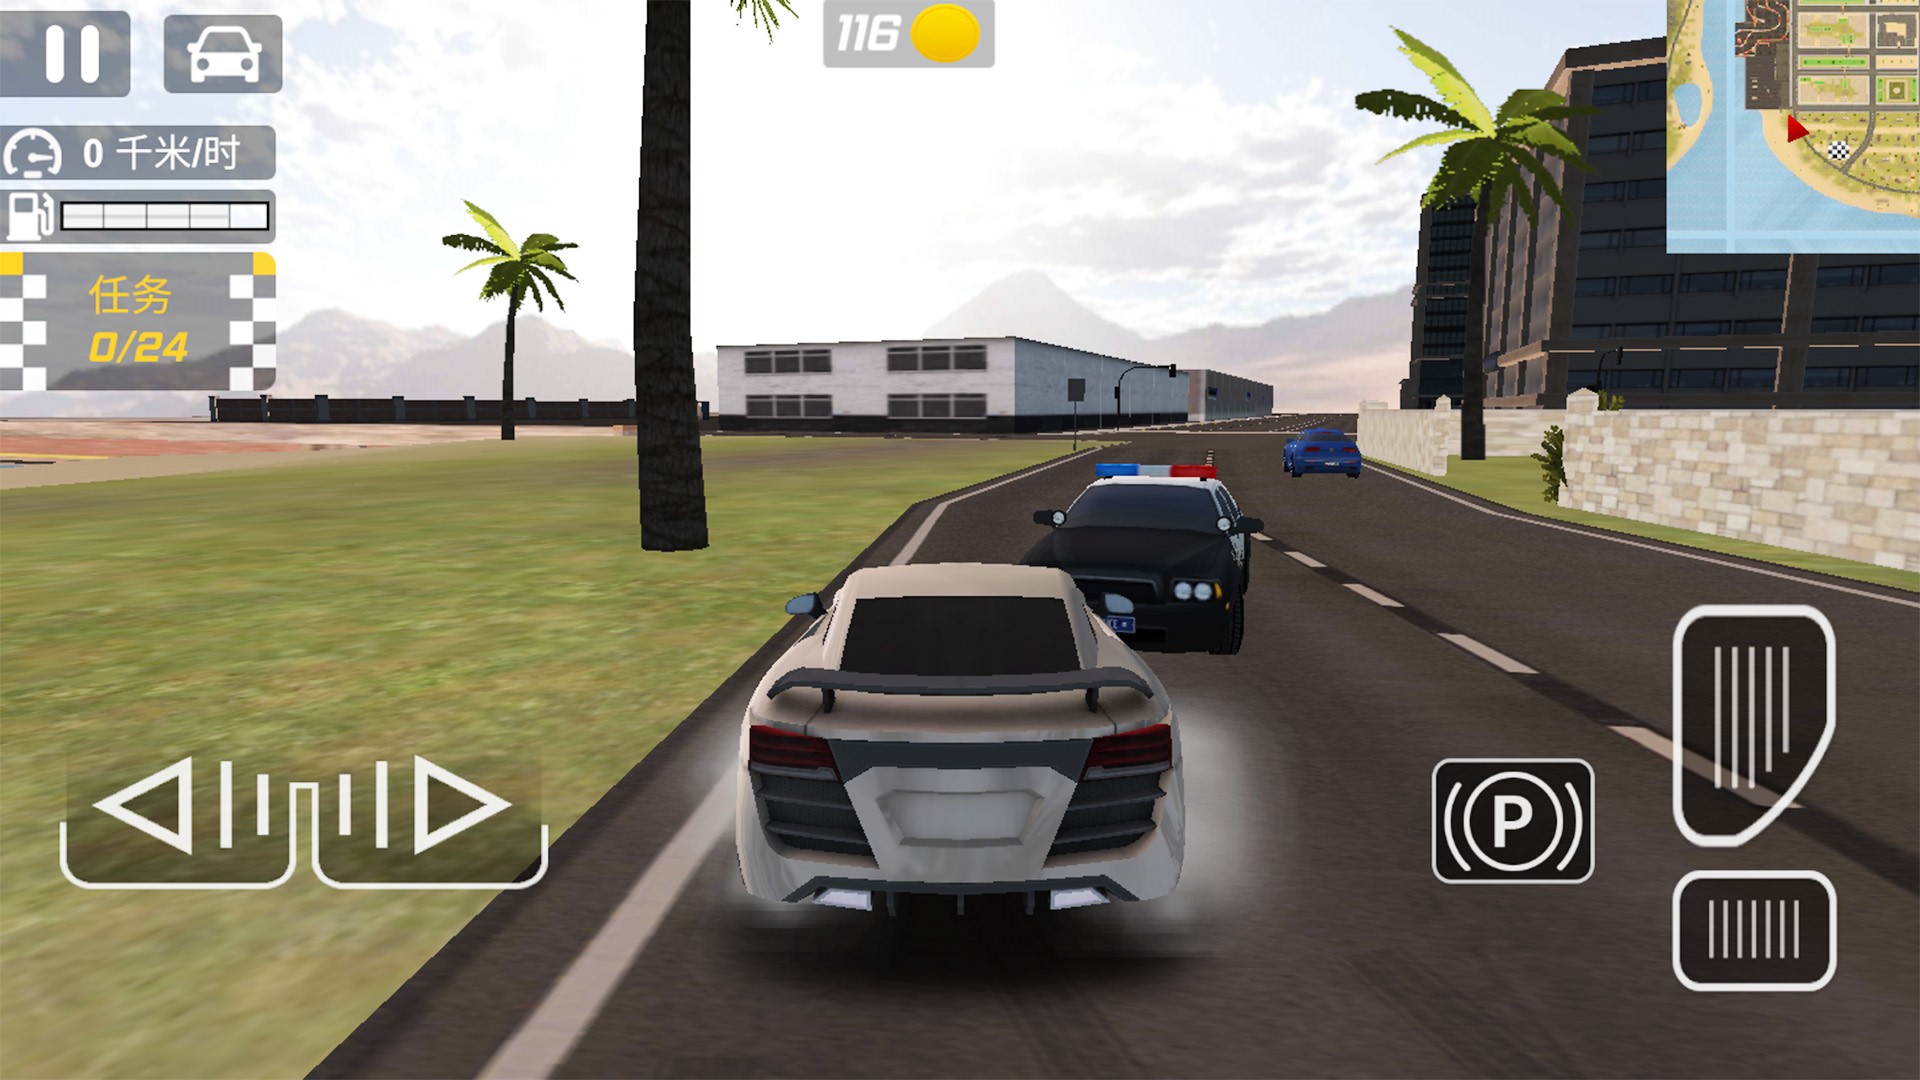 城市飙车赛游戏安卓版下载图片1